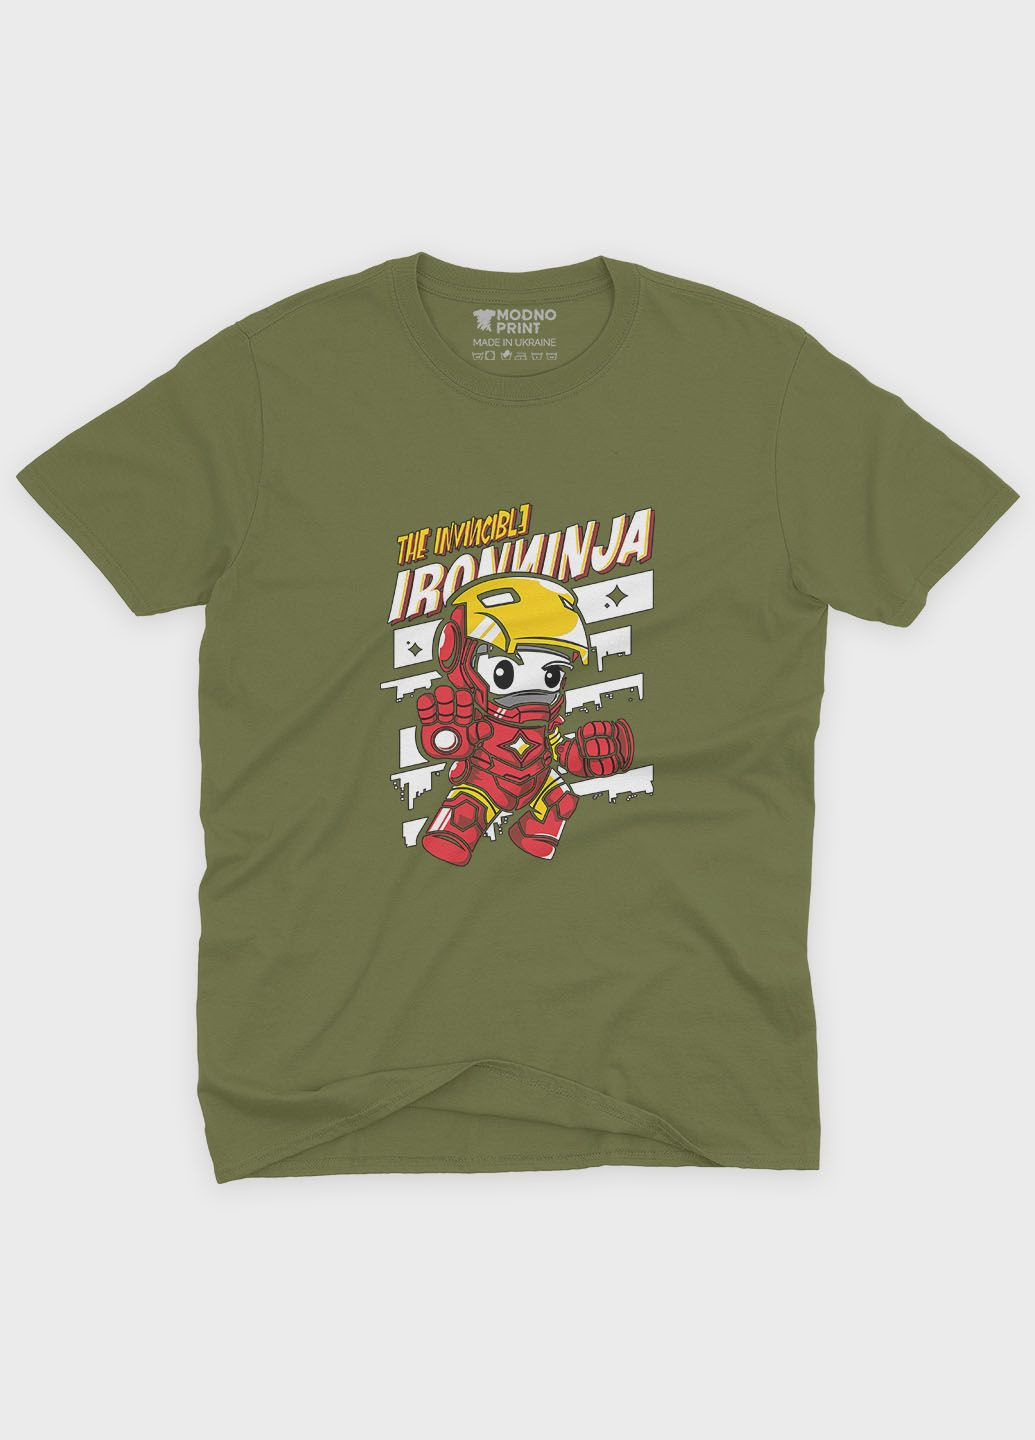 Хаки (оливковая) мужская футболка с принтом супергероя - железный человек (ts001-1-hgr-006-016-009) Modno